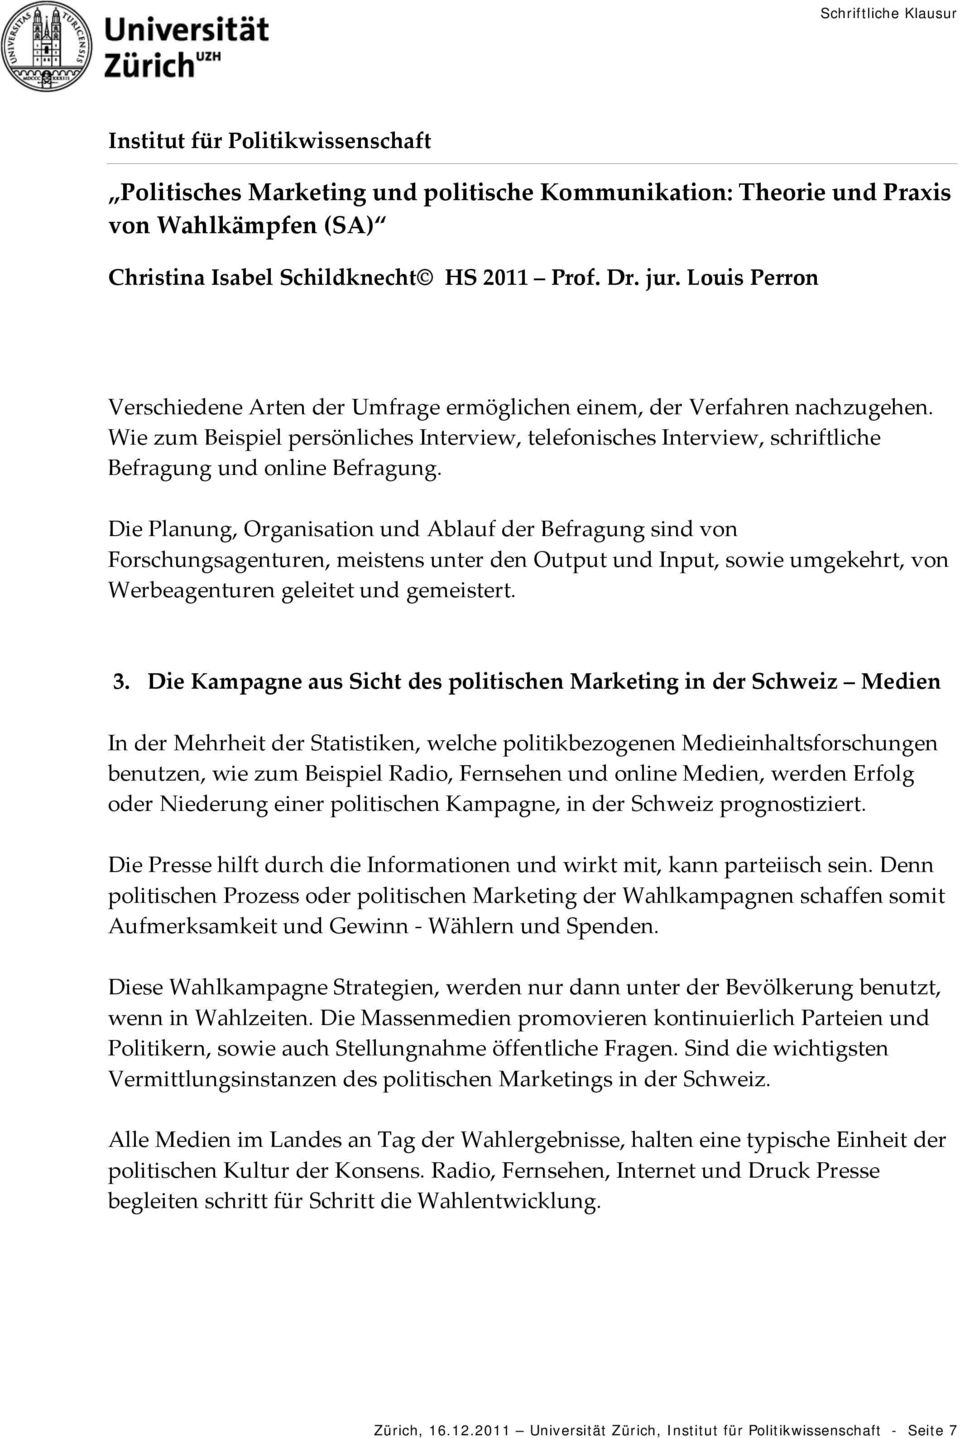 Die Kampagne aus Sicht des politischen Marketing in der Schweiz Medien In der Mehrheit der Statistiken, welche politikbezogenen Medieinhaltsforschungen benutzen, wie zum Beispiel Radio, Fernsehen und